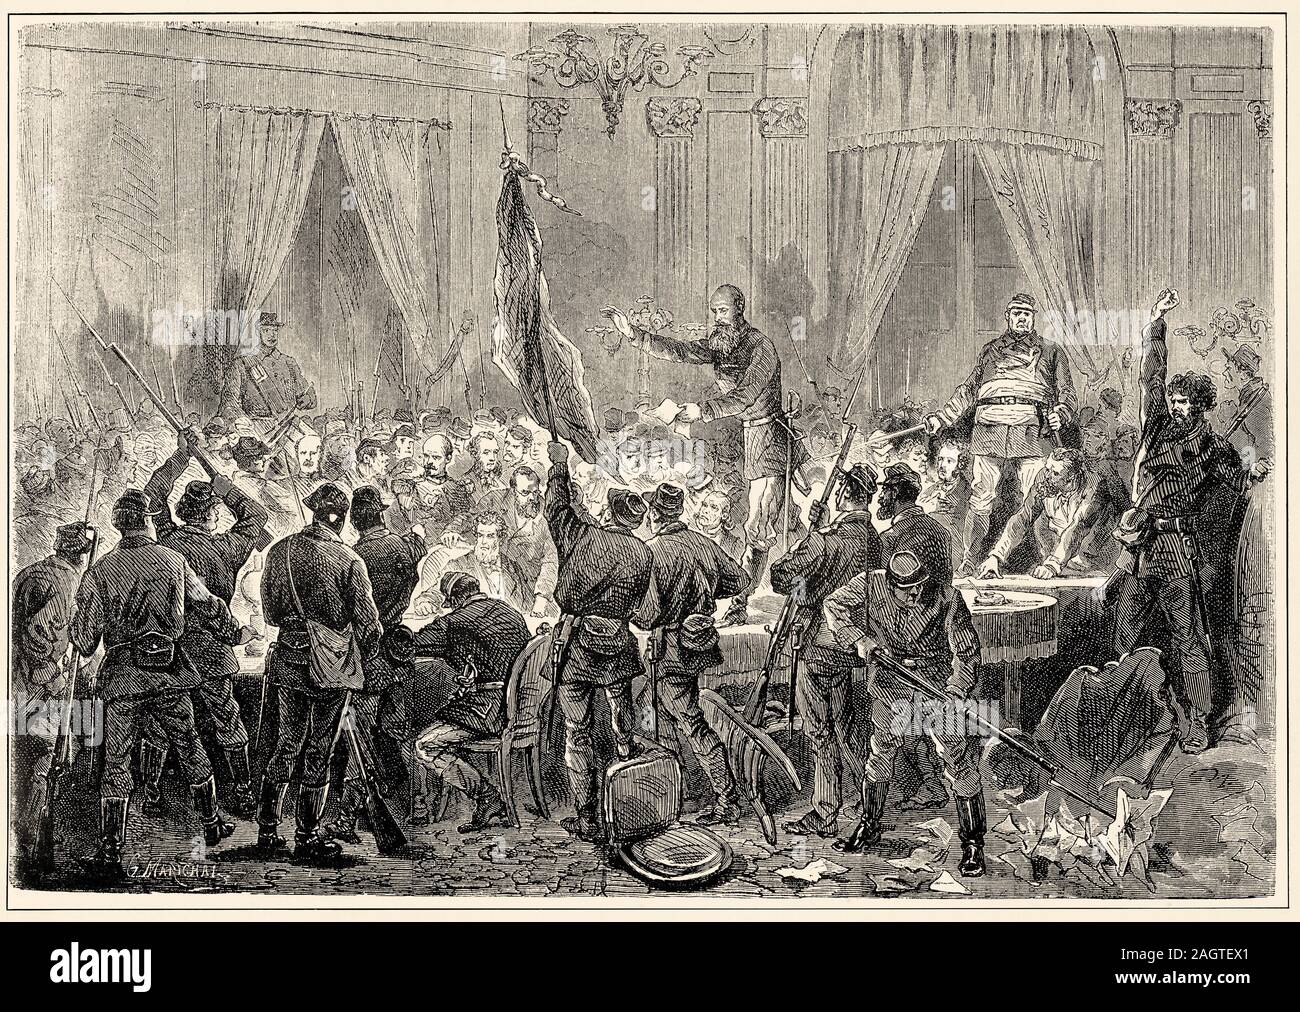 La rivolta del 31 ottobre 1870 ha avuto luogo a Parigi durante l'assedio della capitale, durante la guerra franco-prussiana del 1870. Esso è stato destinato alla prote Foto Stock